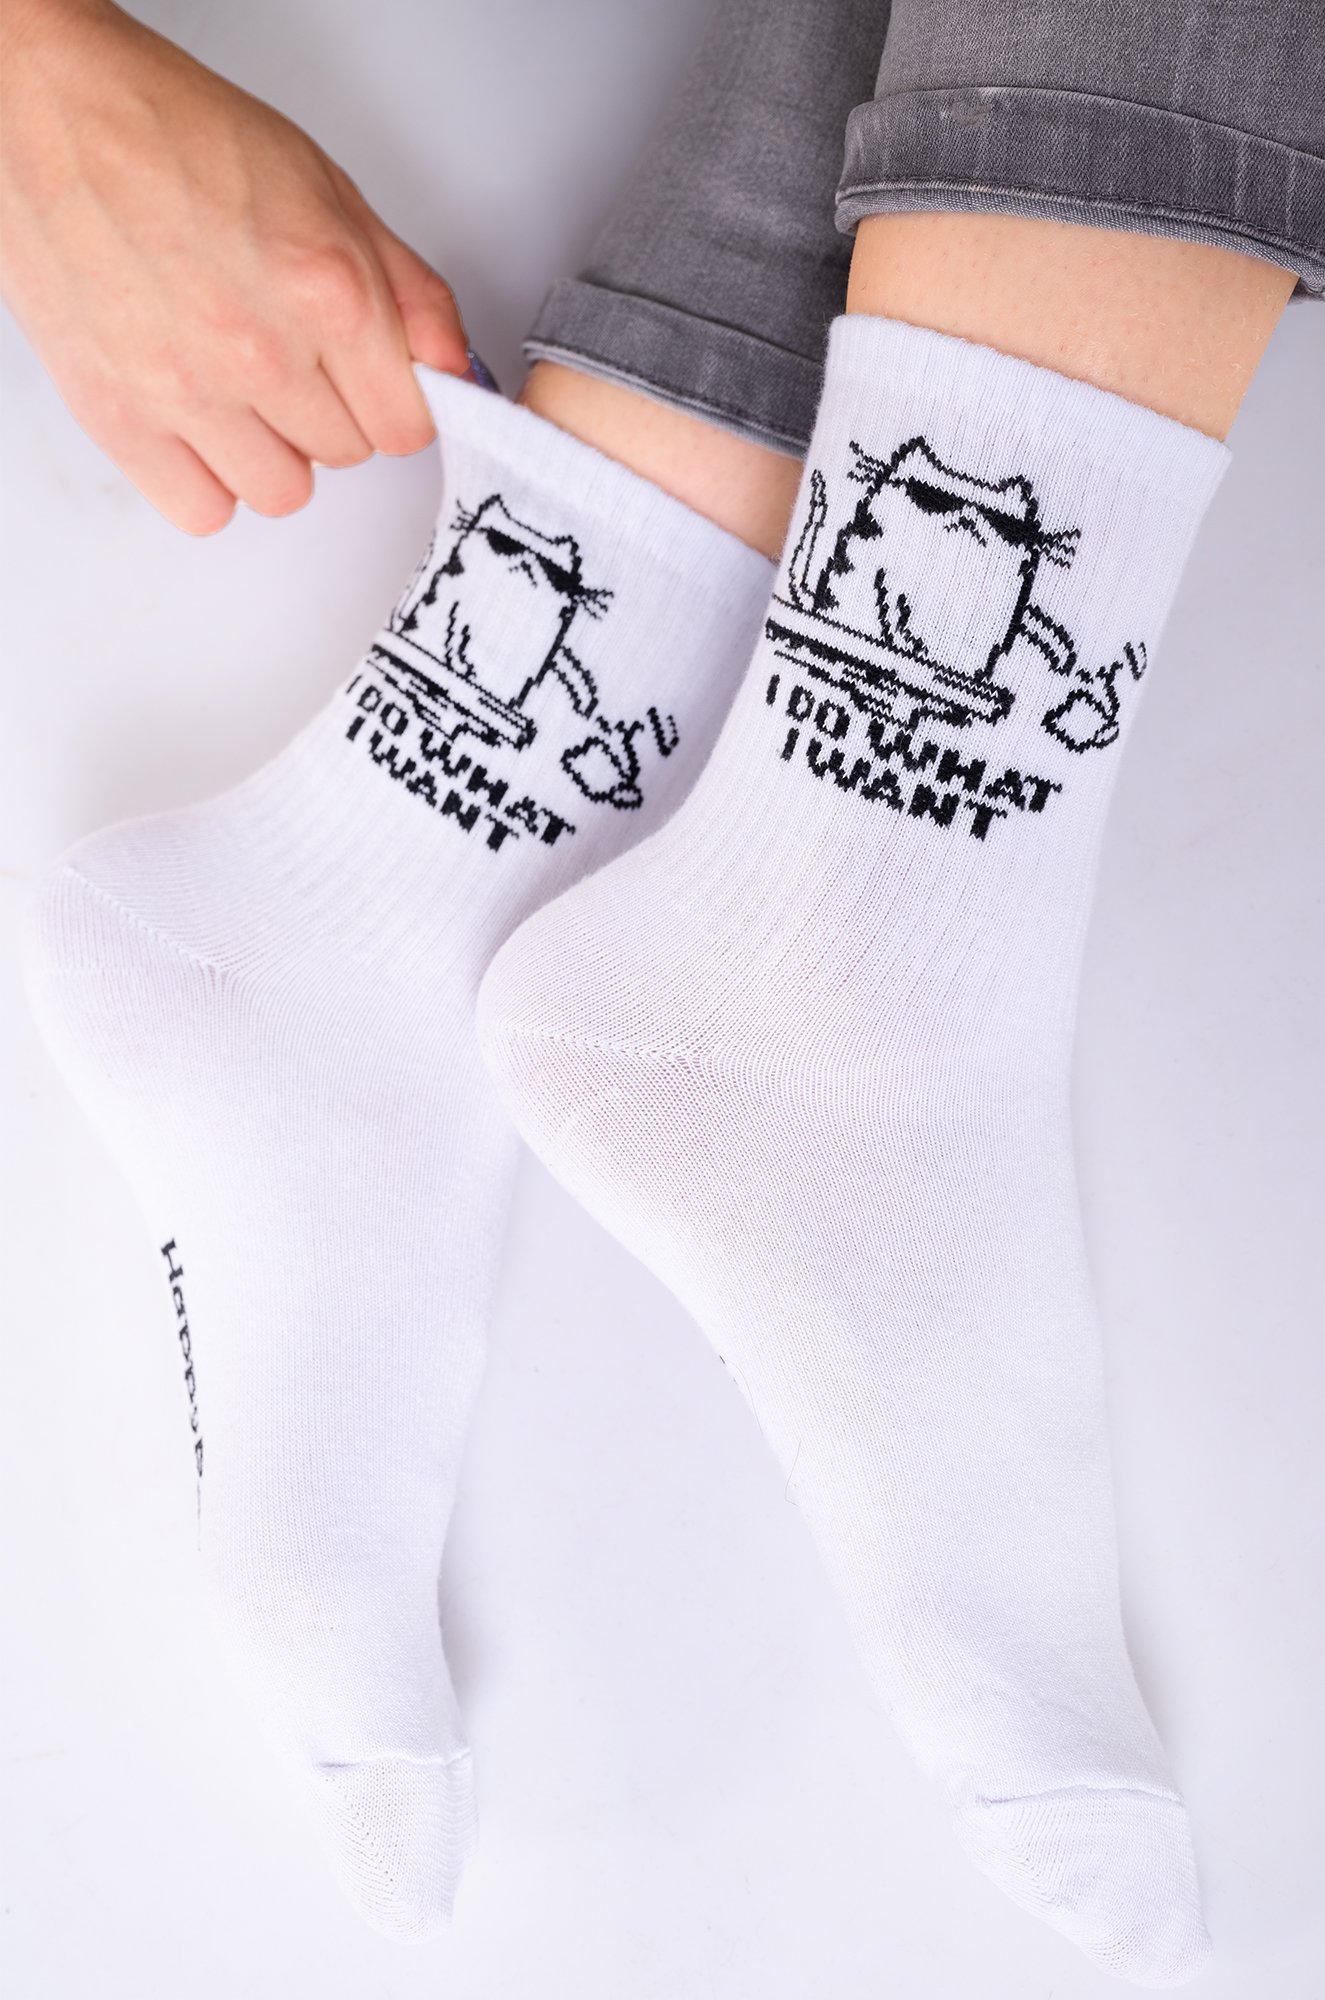 Прикольные носки с надписью Happy Fox